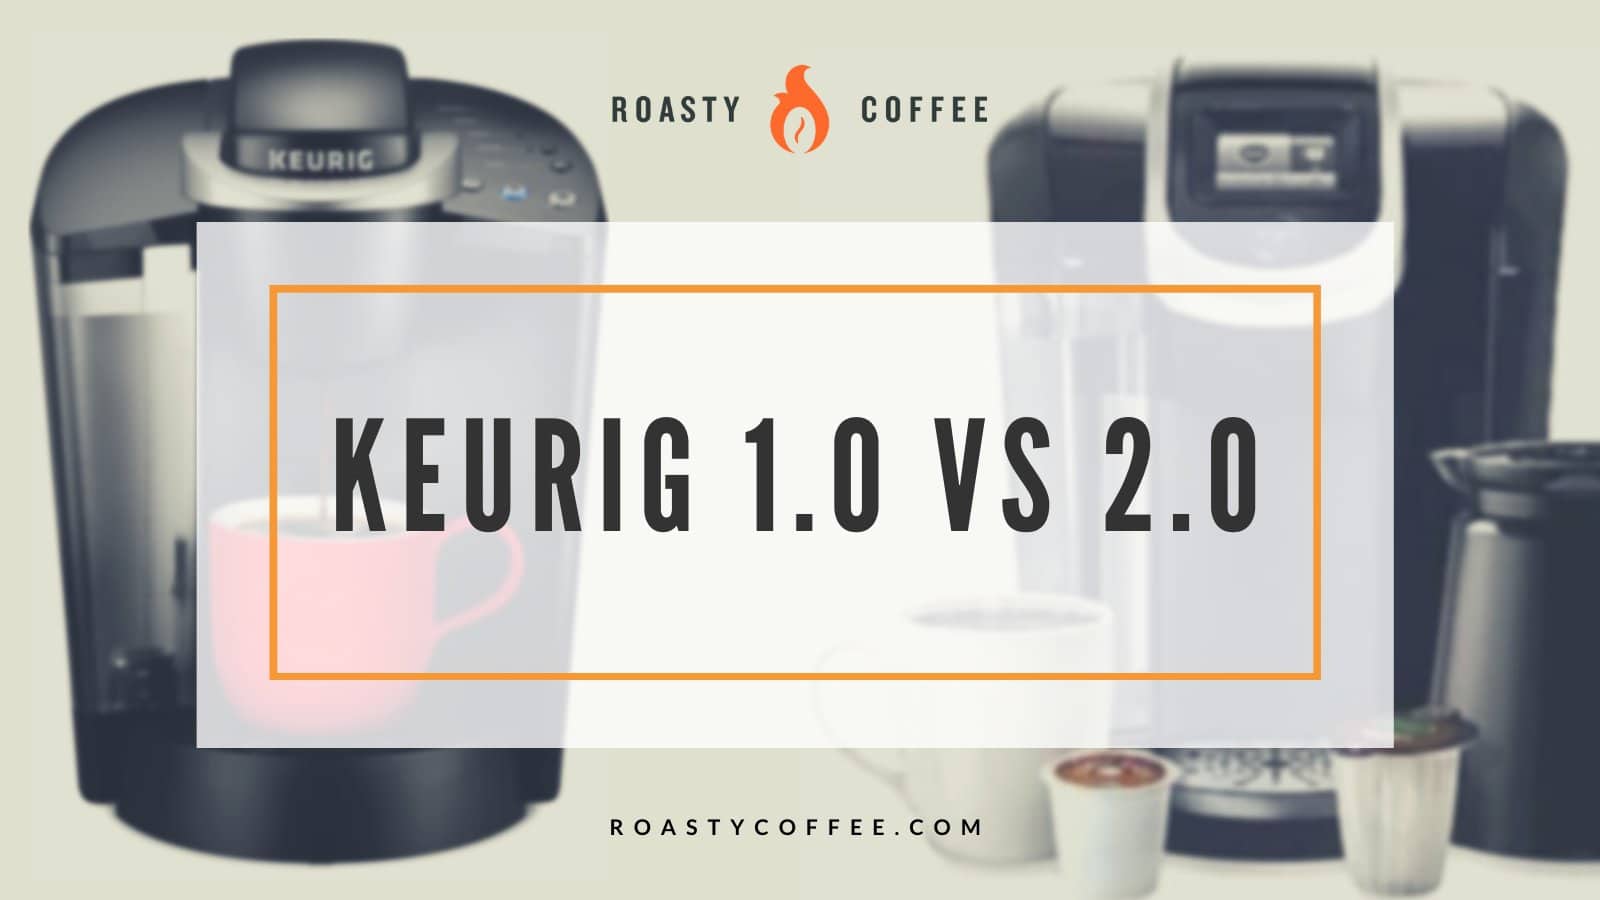 Keurig 1.0 vs. 2.0: comparemos y contrastemos estos modelos